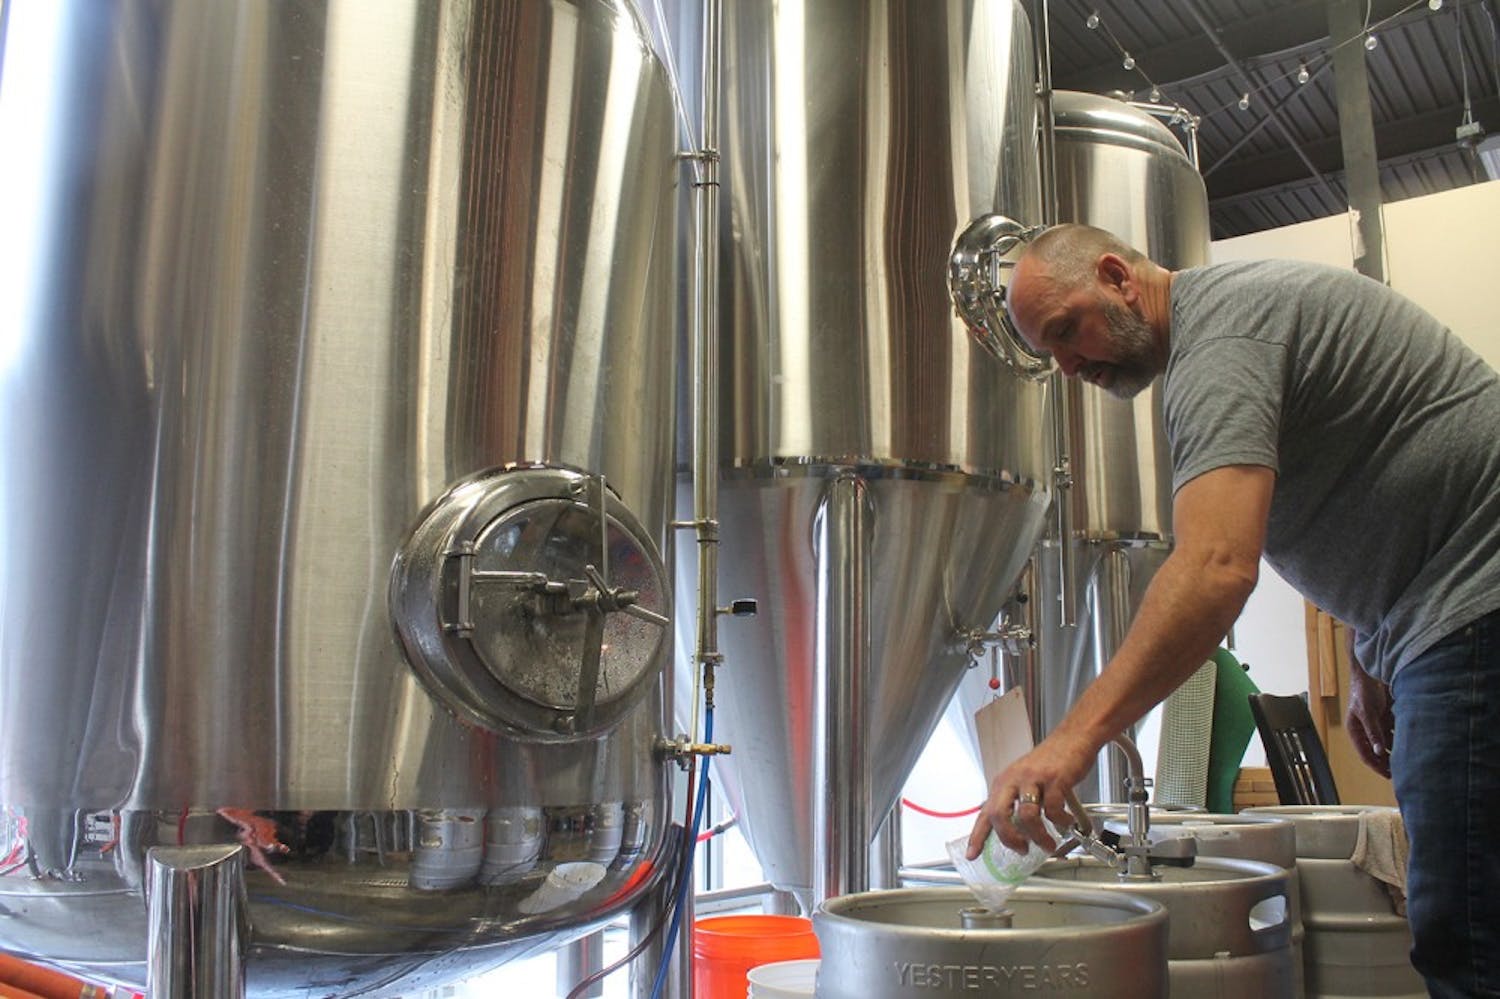 David Larsen. the owner of YesterYears Brewery, from Pensacola prepares kegs with freshly brewed beer.